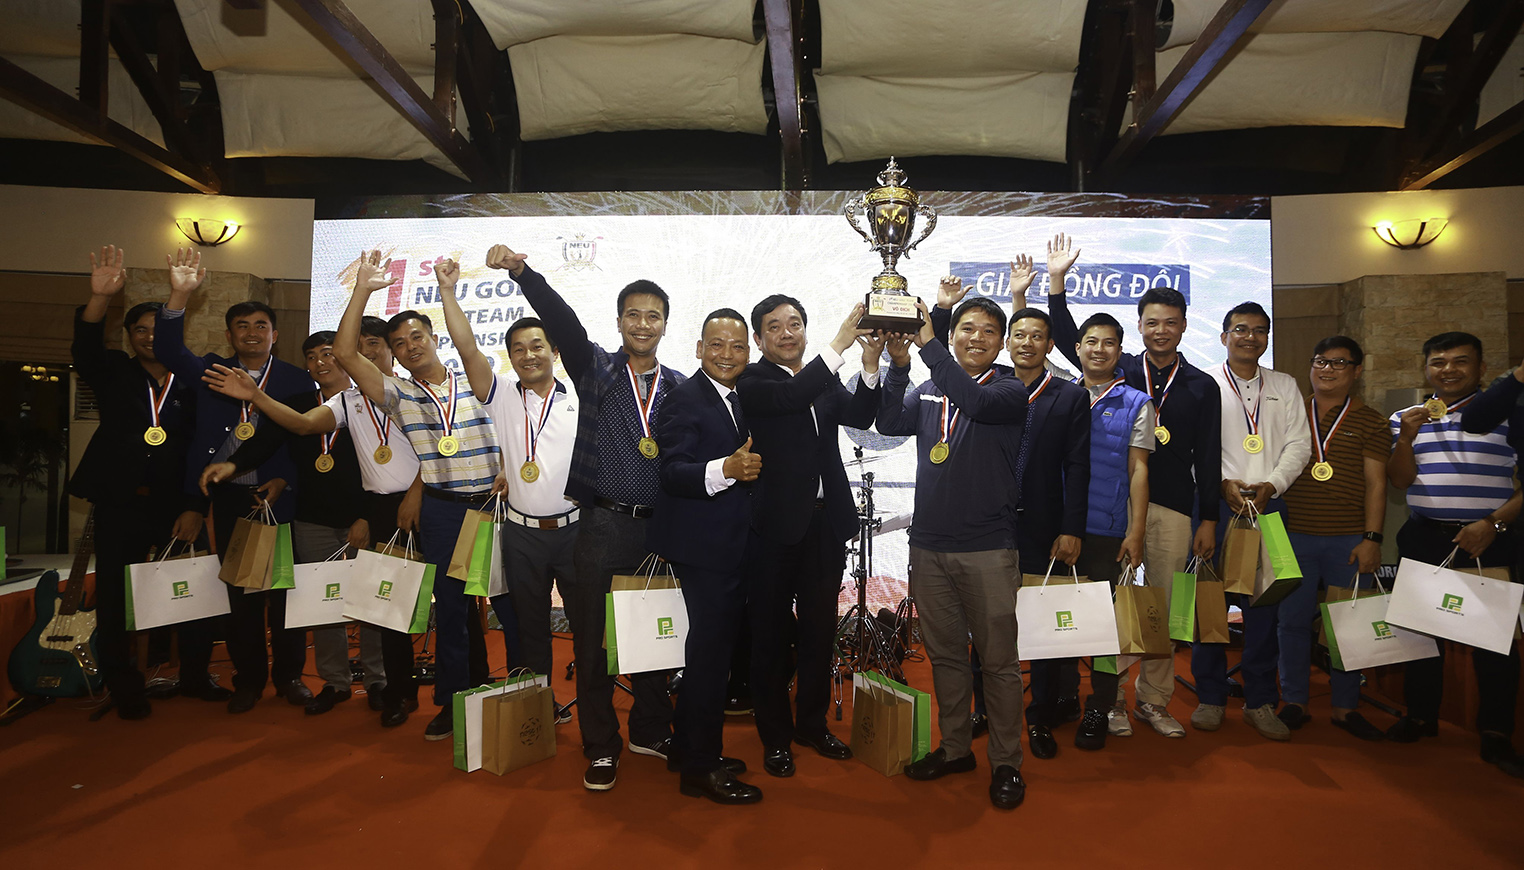 NEU Golf K40+ đăng quang vô địch Giải vô địch các CLB golf Đại học Kinh tế quốc dân lần I–2019